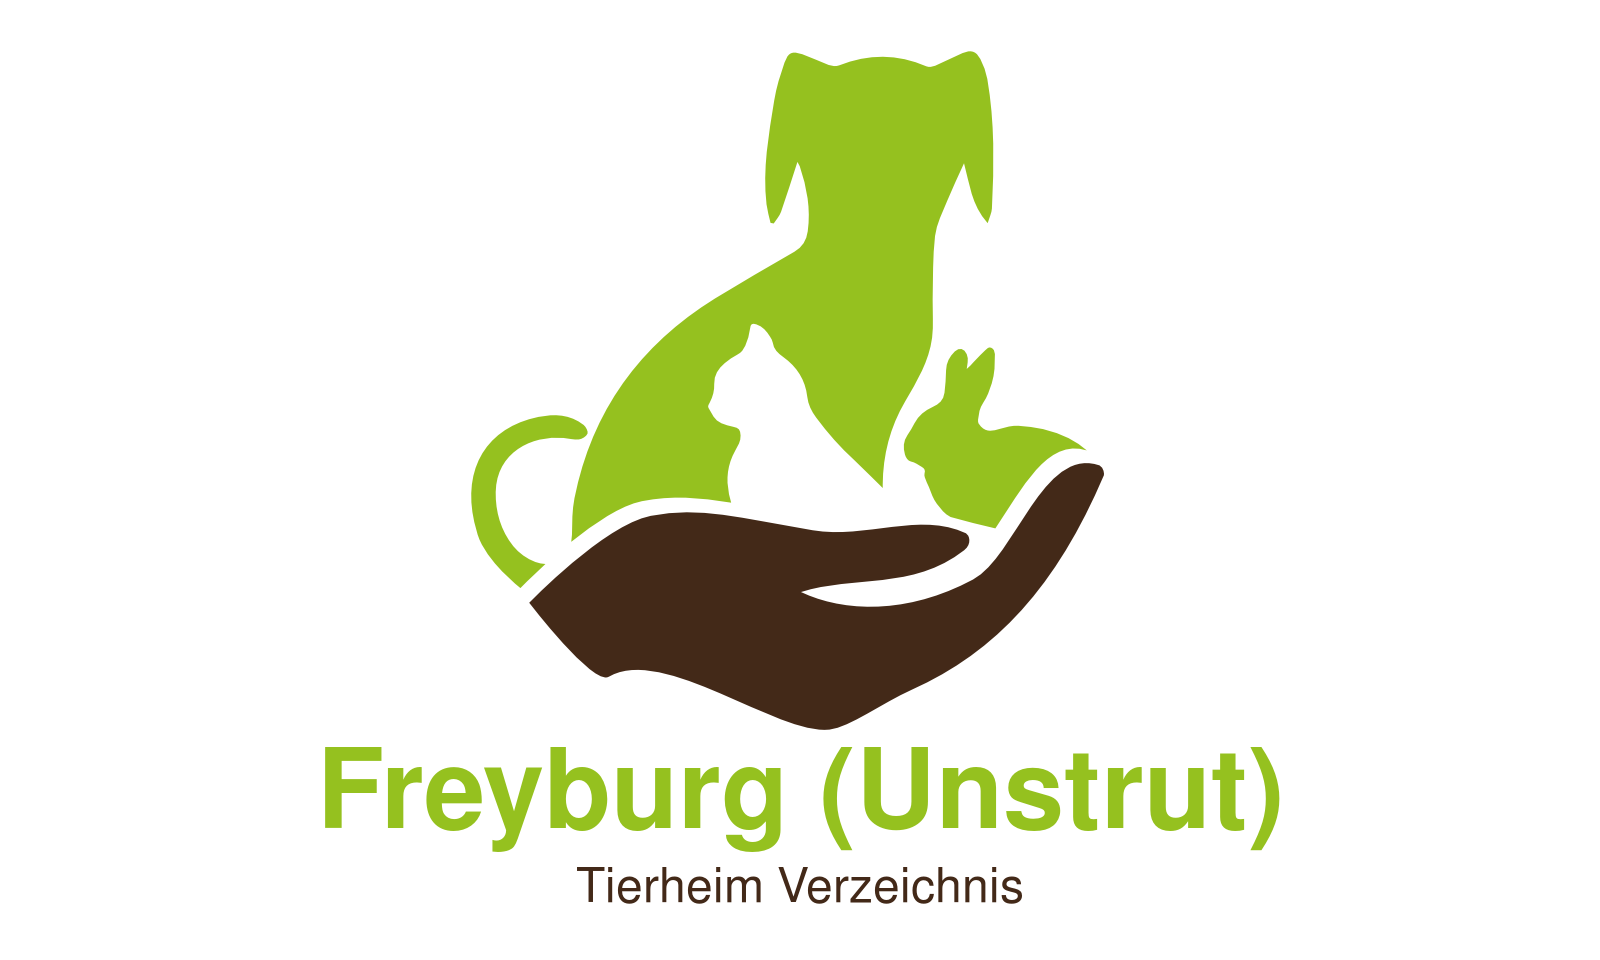 Tierheim Freyburg (Unstrut)